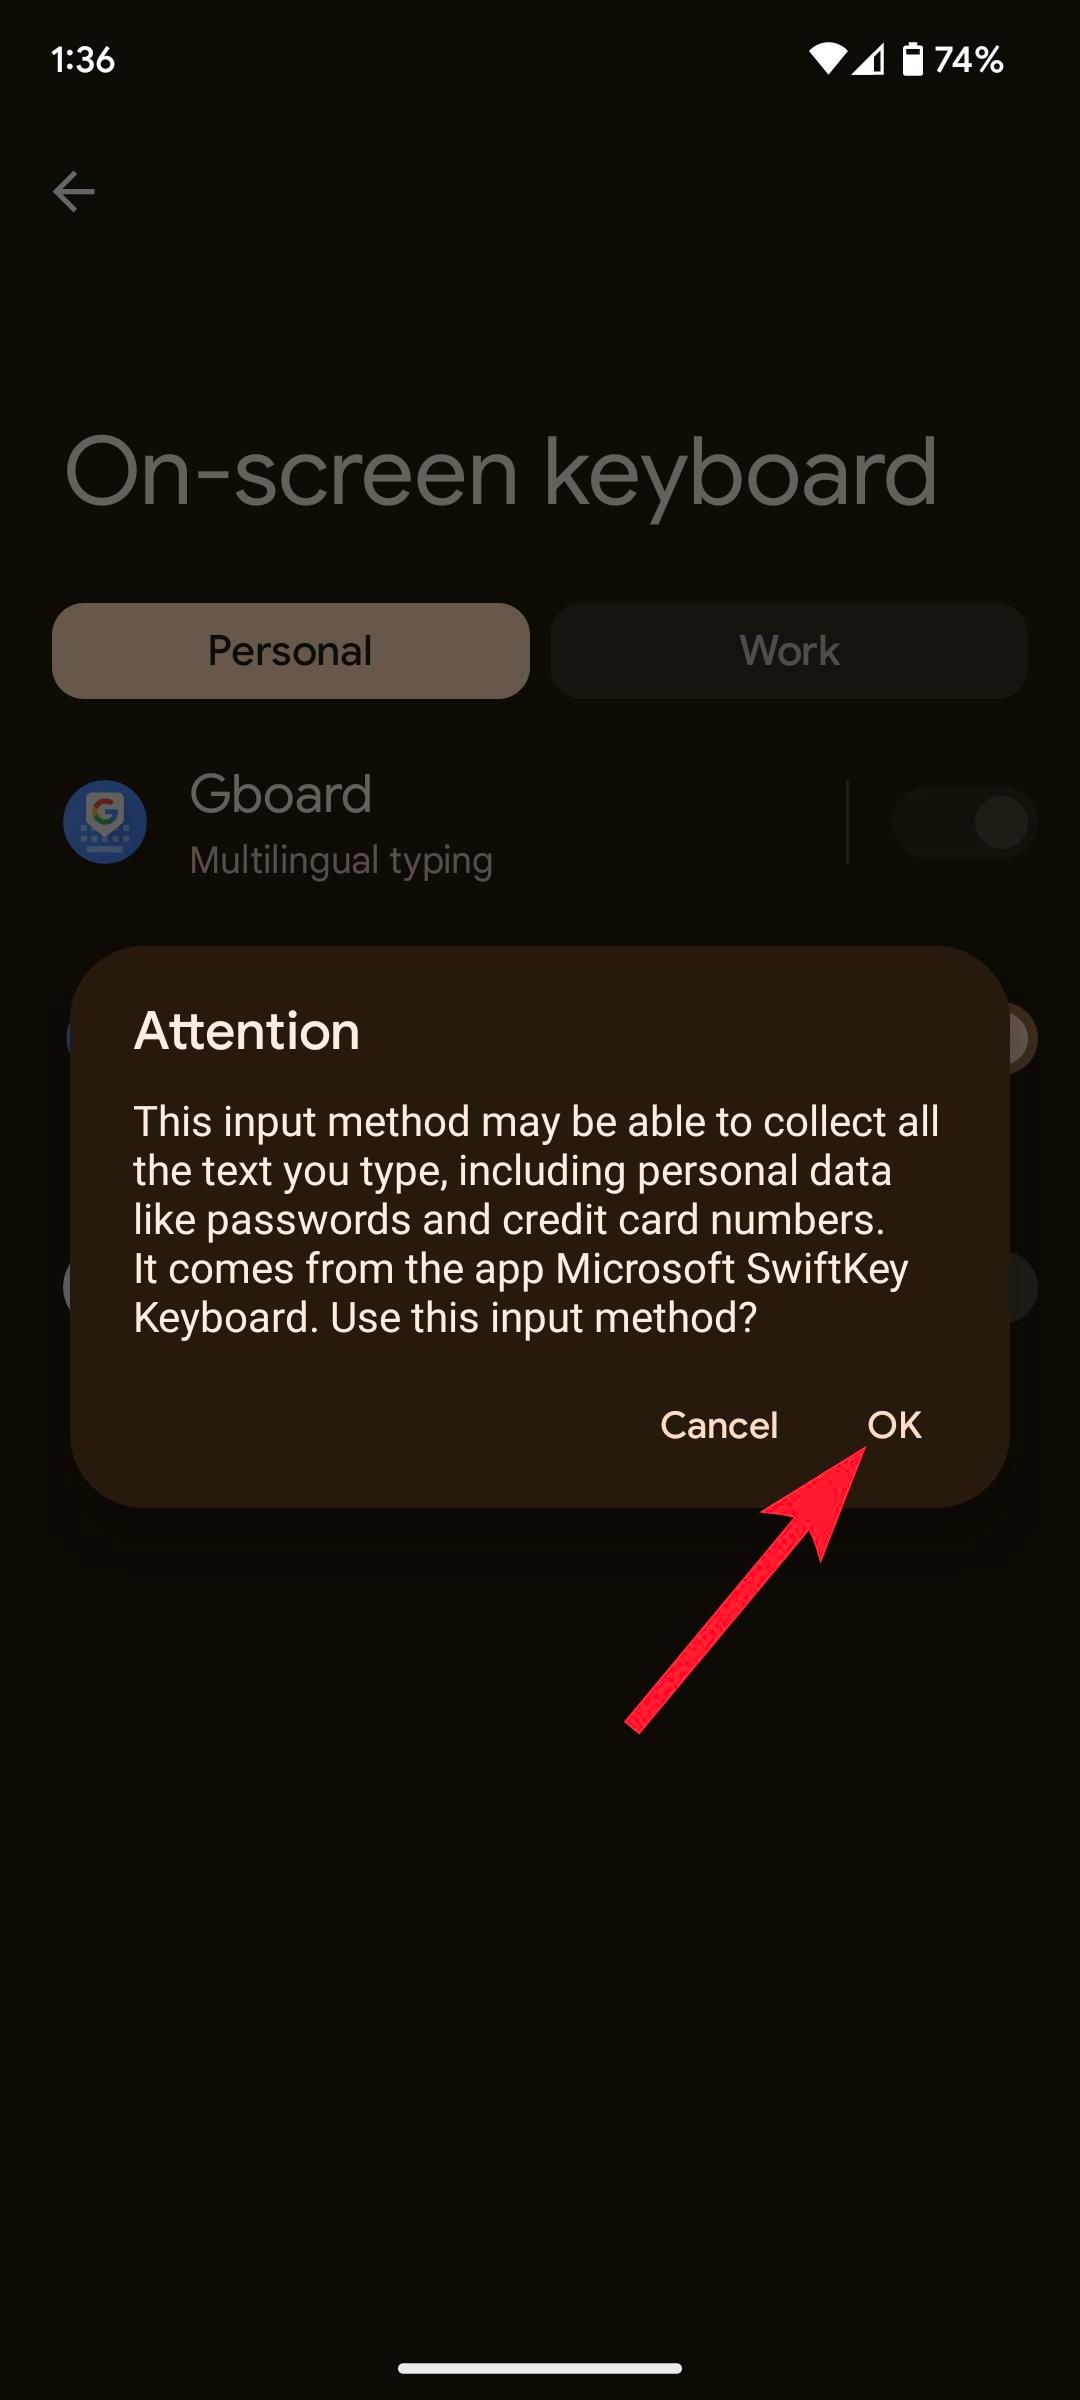 Cuplikan layar opsi ok dalam konfirmasi peringatan di pengaturan keyboard Android